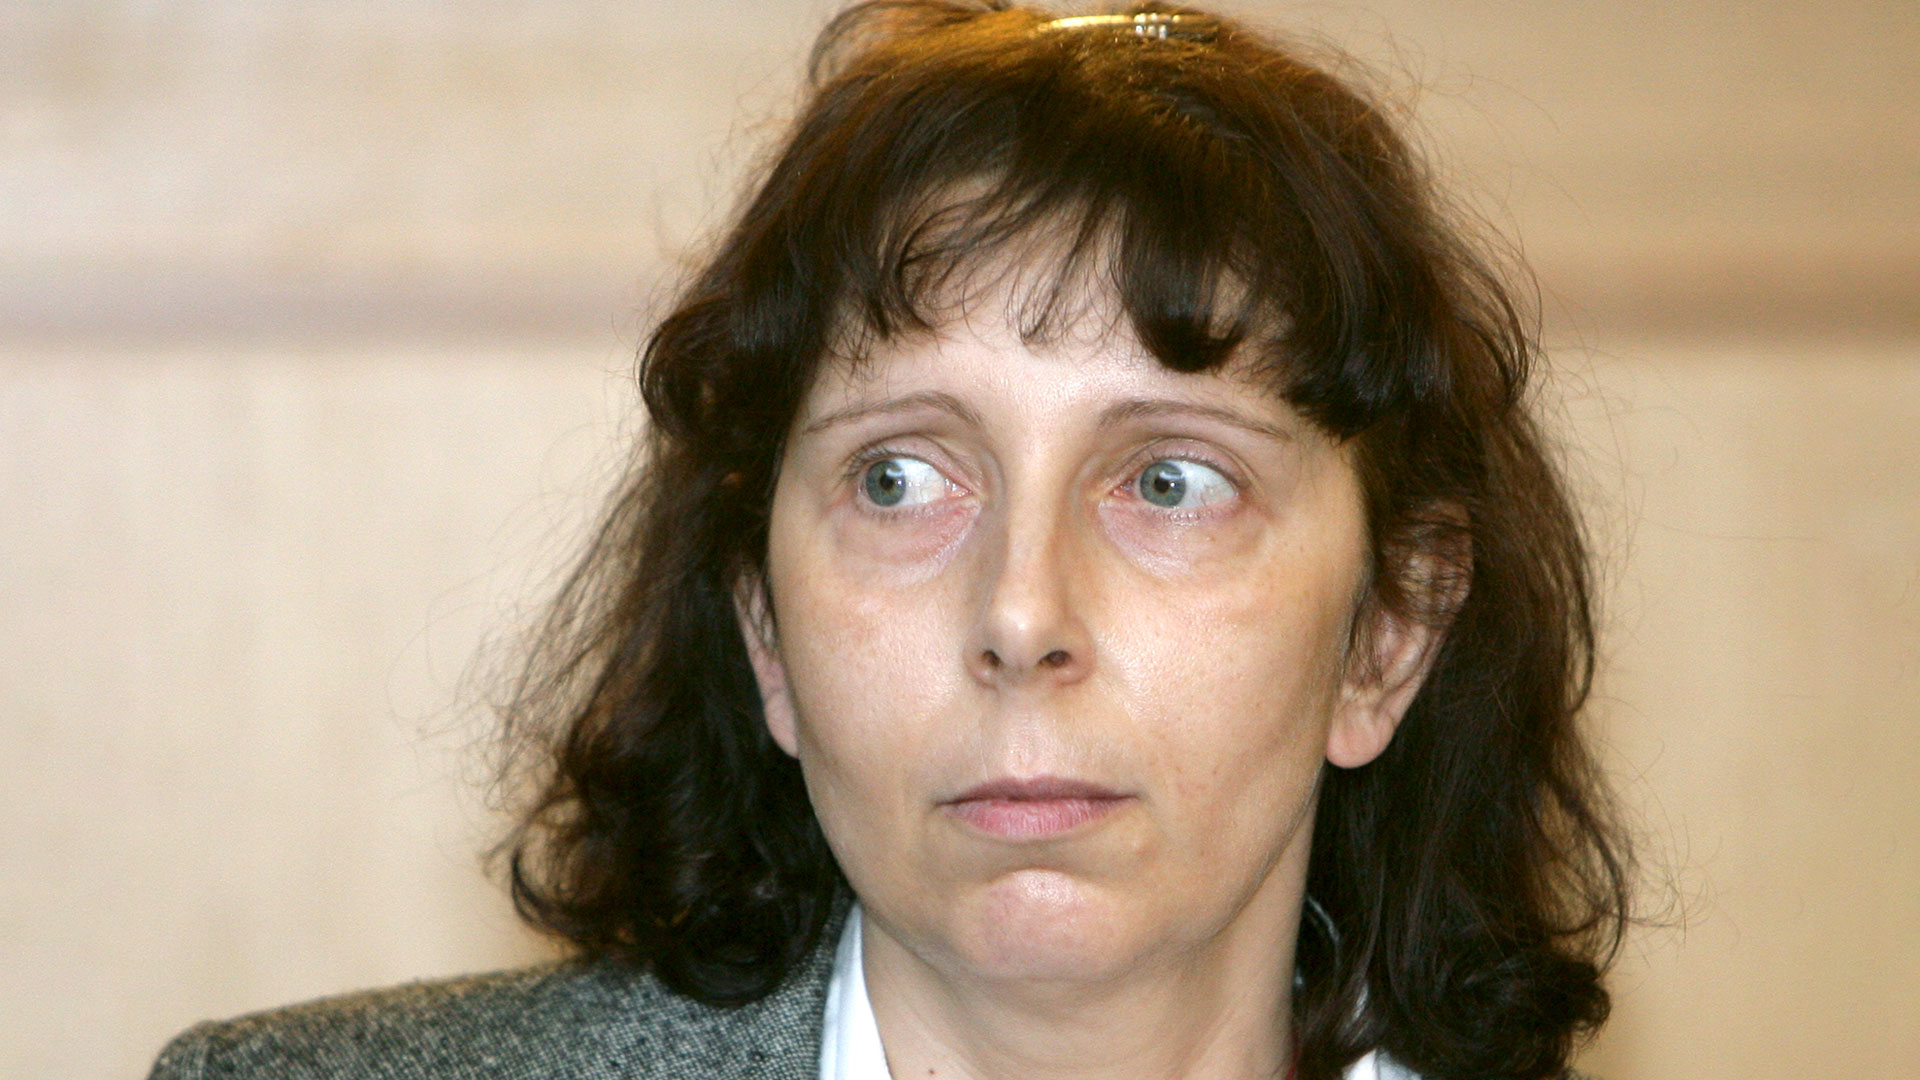 Murió por eutanasia la mujer belga que degolló a sus cinco hijos: pidió poner fin a su vida por “sufrimiento psicológico sin esperanzas”